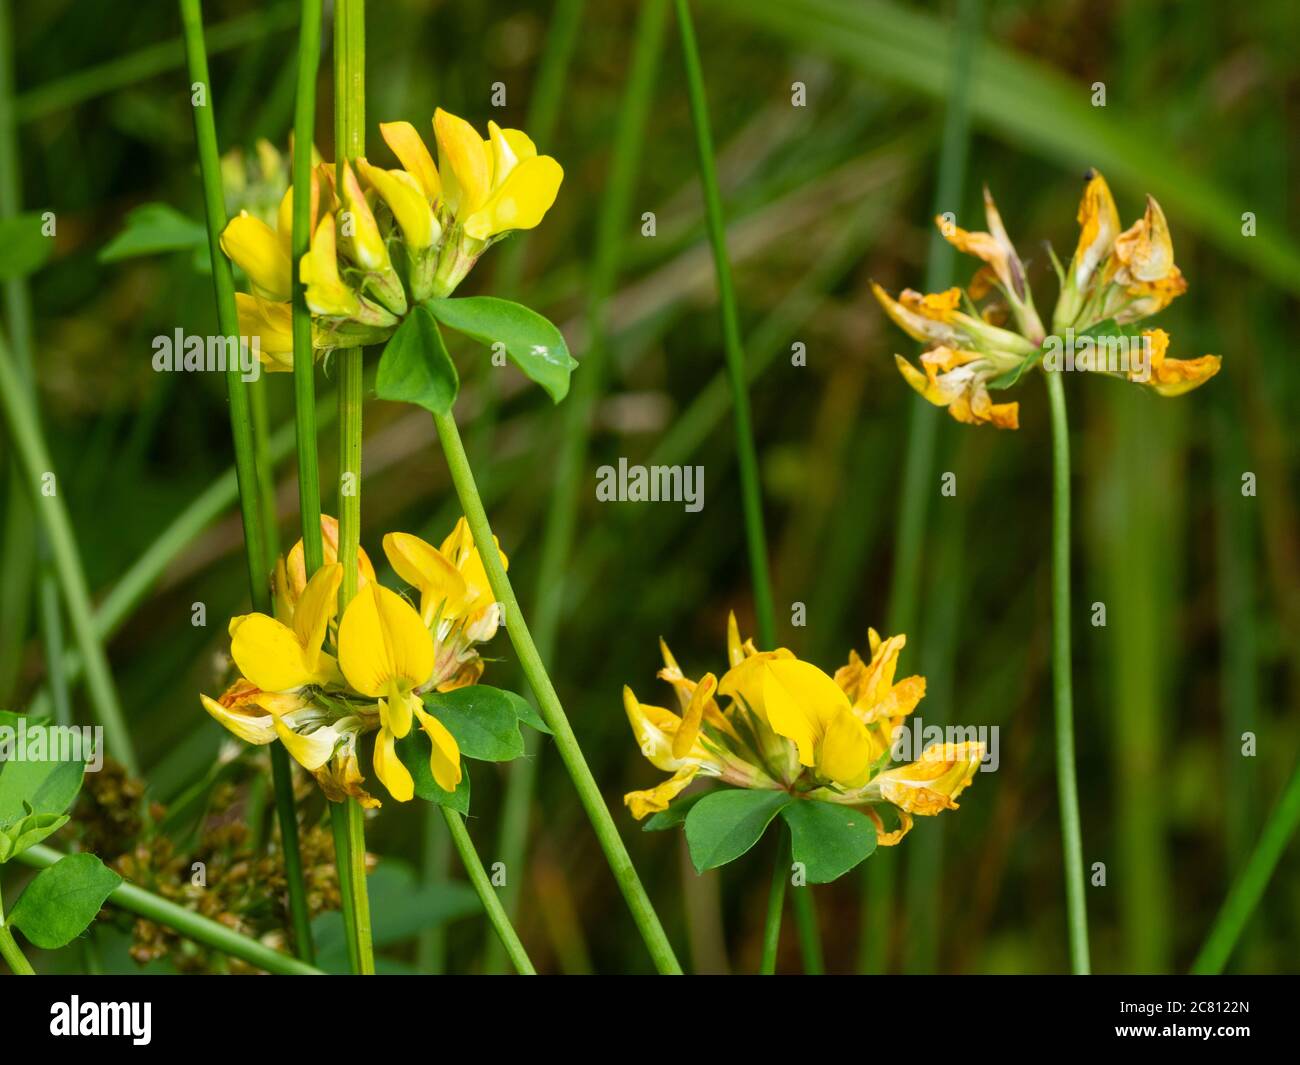 Flores amarillas de verano en tallos erguidos de la flor silvestre del Reino Unido, Lotus pedunculatus, mayor pie de pájaro trefoil Foto de stock